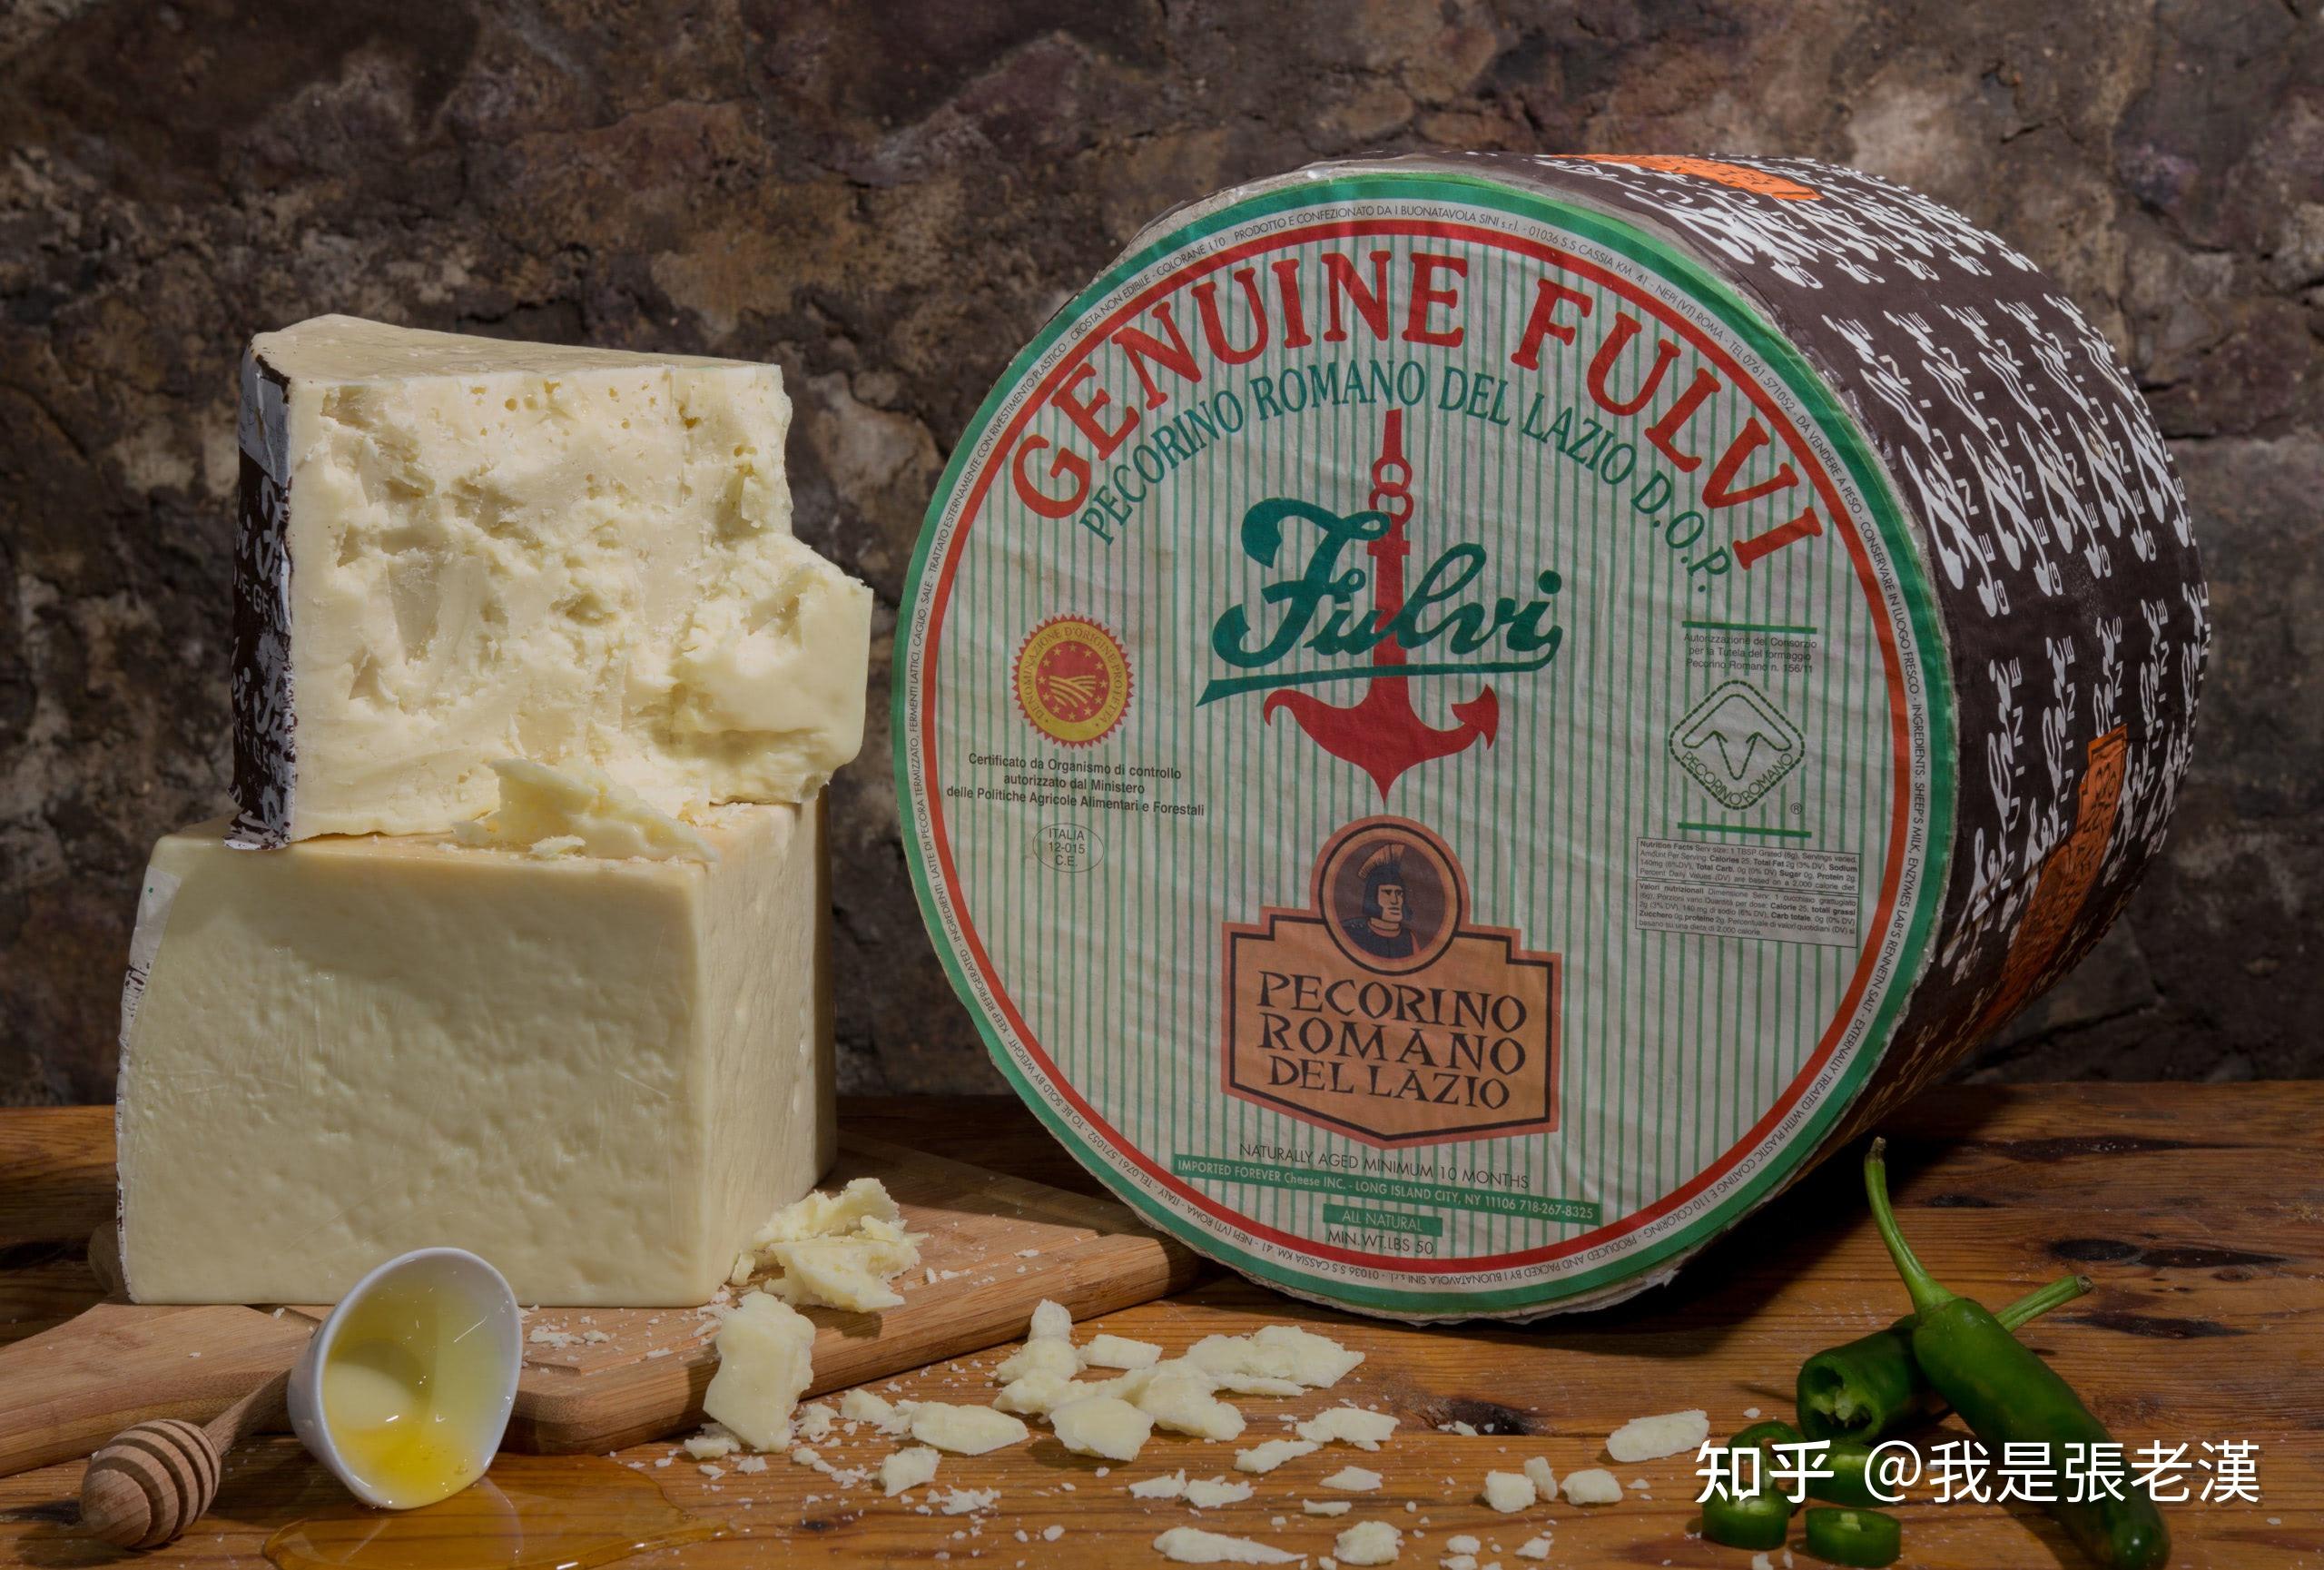 新鲜的乳清干酪乳酪用蜂蜜和多士 库存照片. 图片 包括有 巴西, 原始, 虚拟, 意大利语, 干酪, 制动手 - 44224926